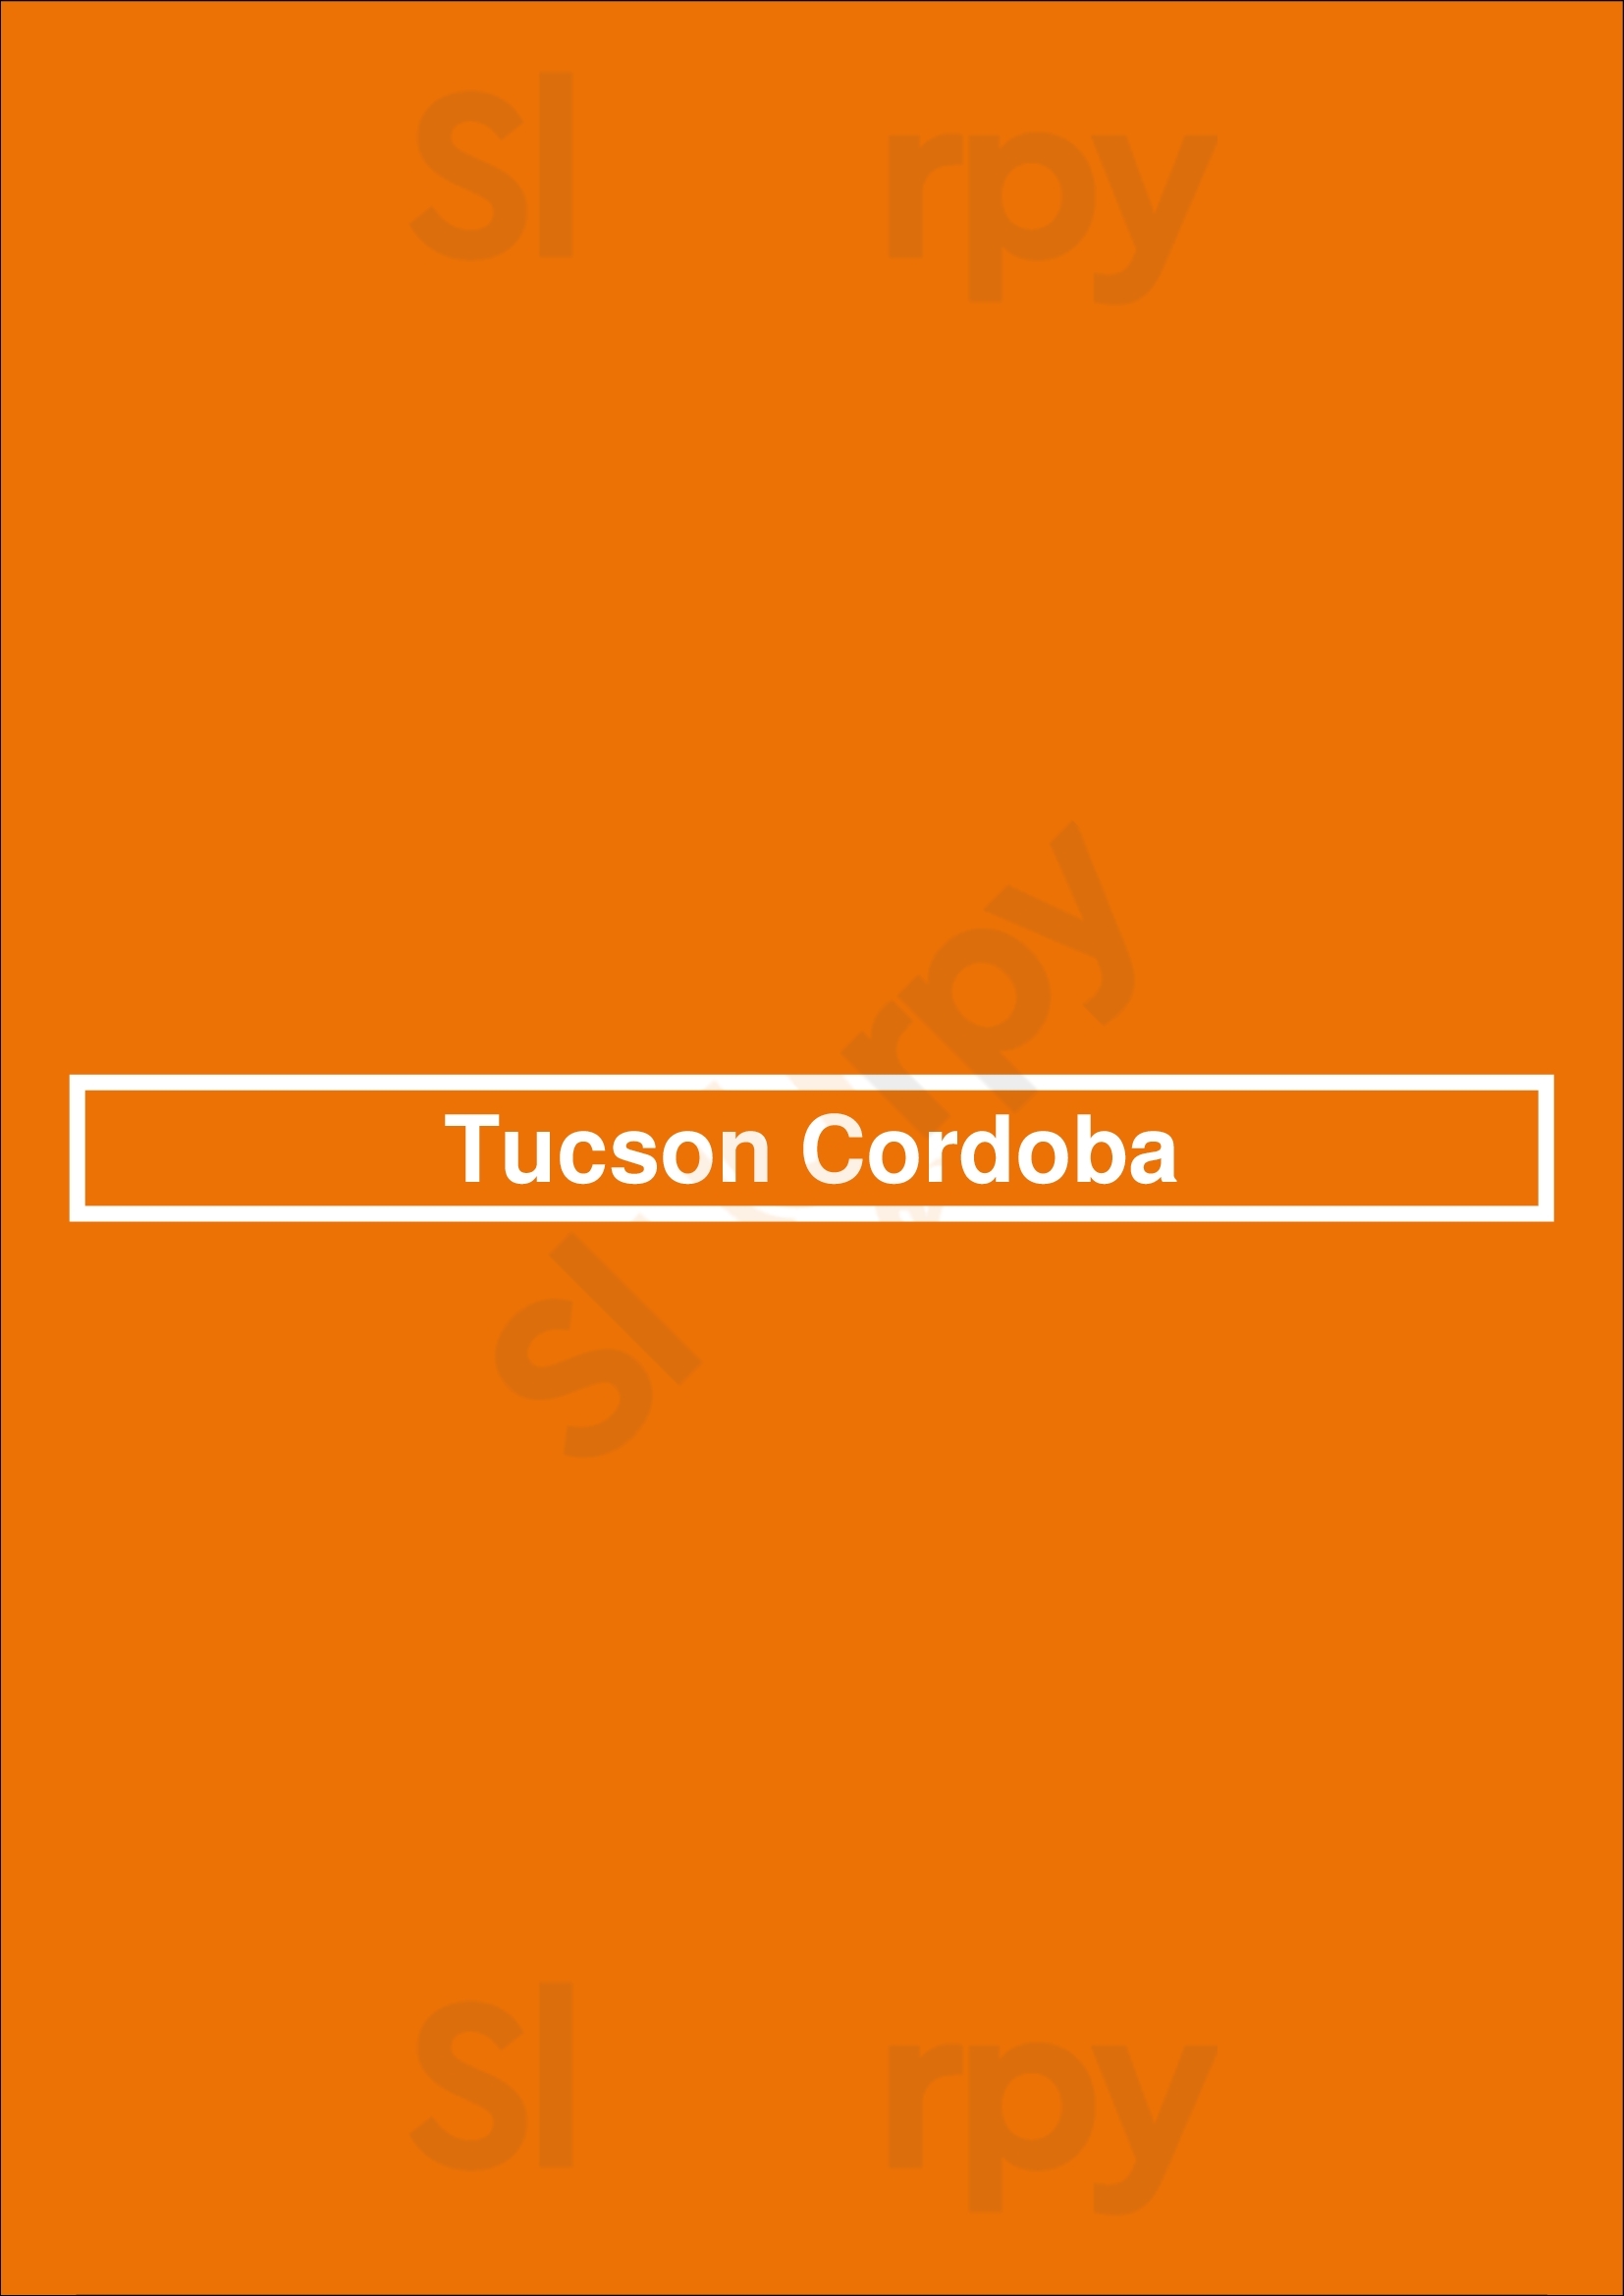 Tucson Cordoba Córdoba Menu - 1